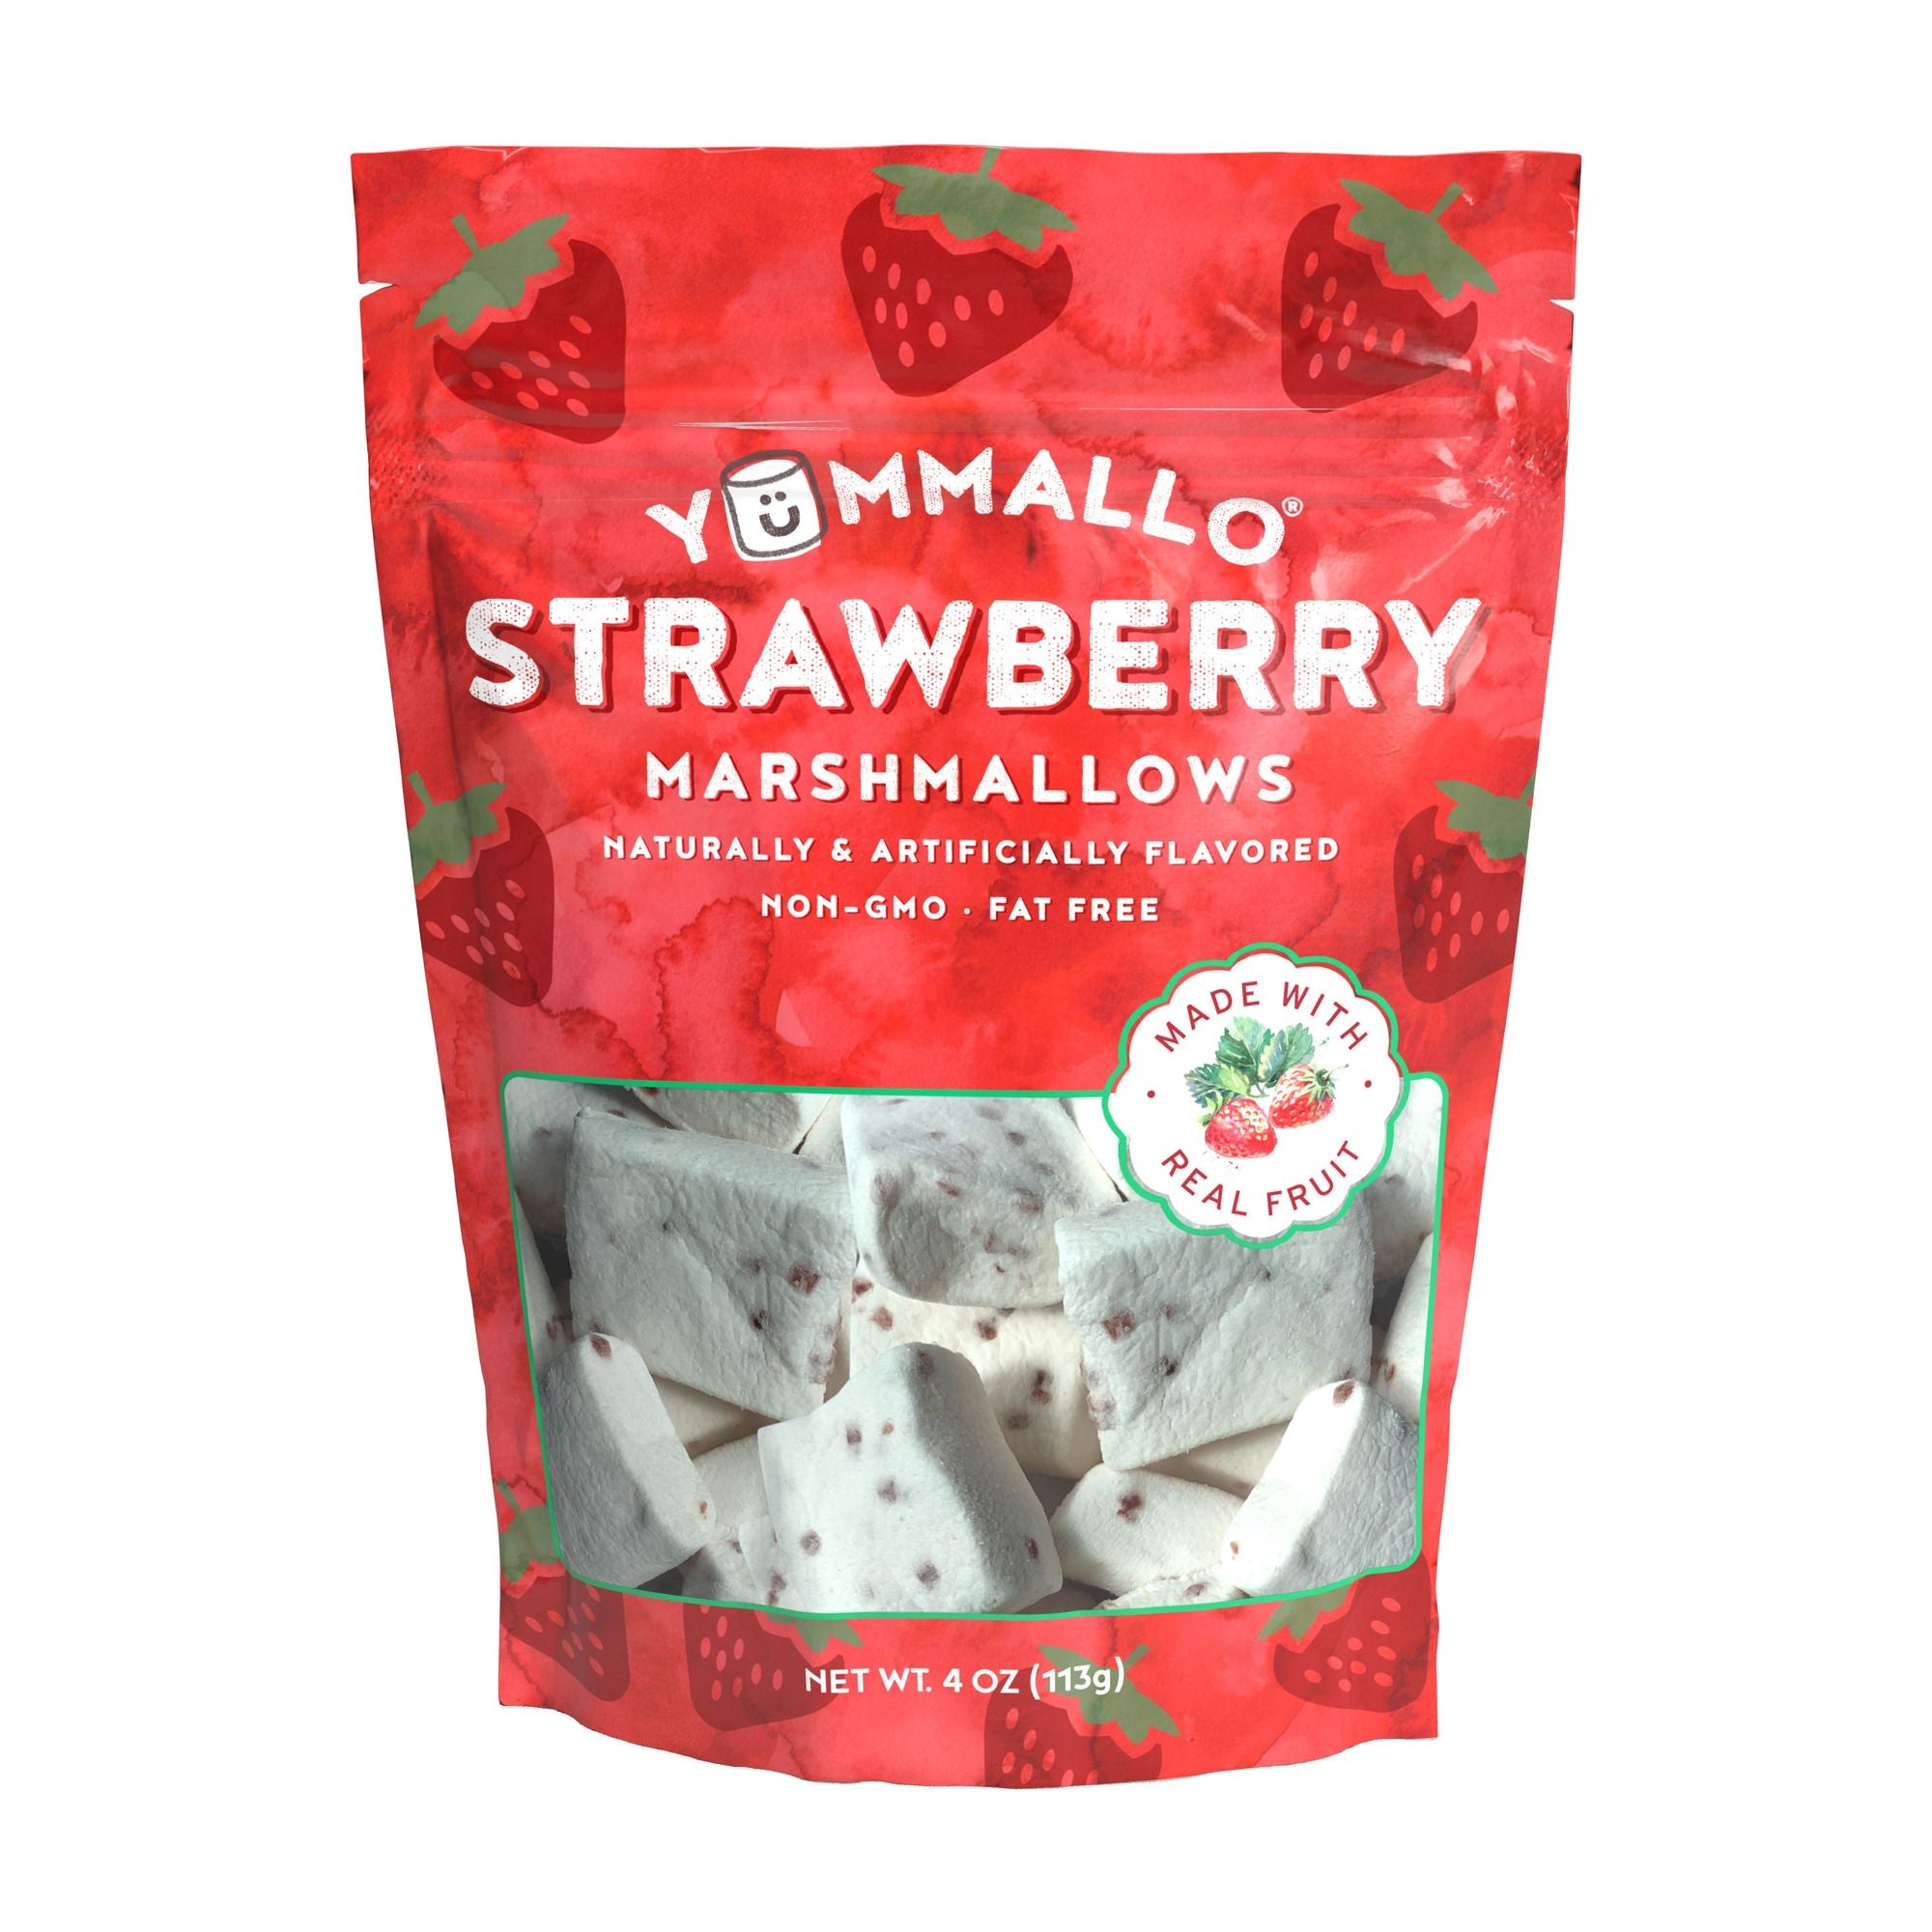 Yummallo Strawberry Marshmallows, 4oz